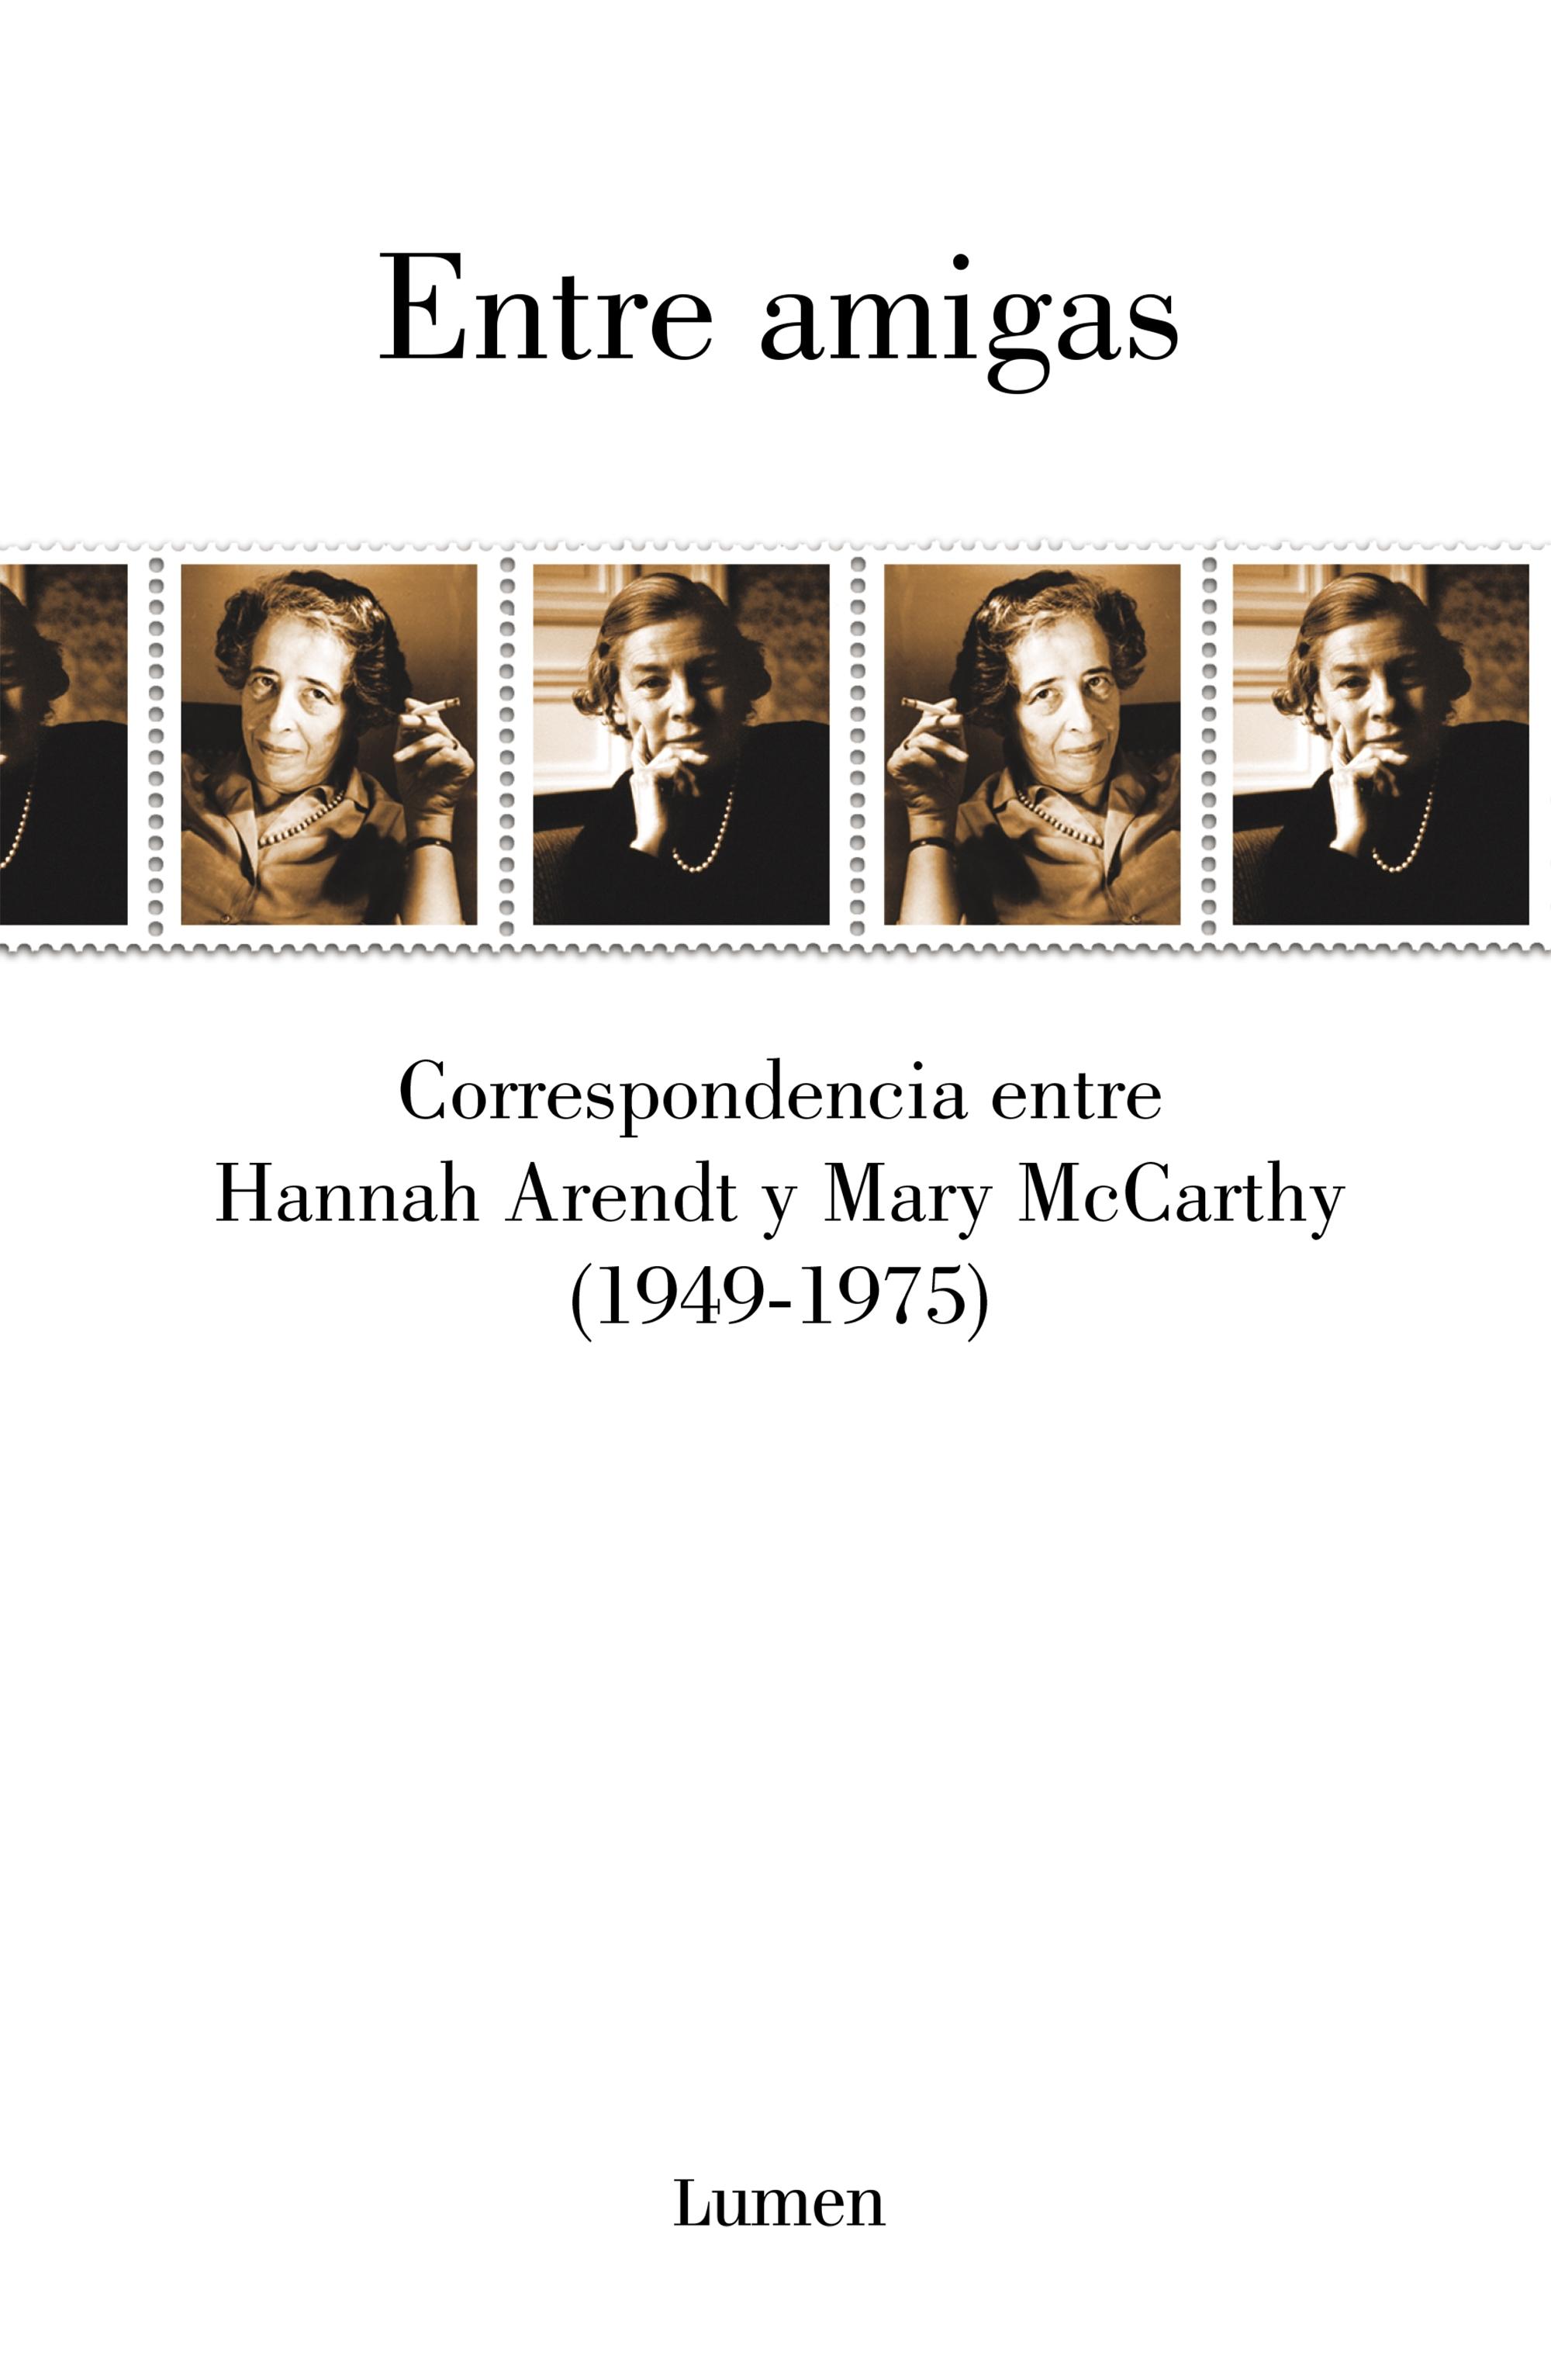 Entre Amigas "Correspondencia Entre Hannah Arendt y Mary Mccarthy 1949-1975". 